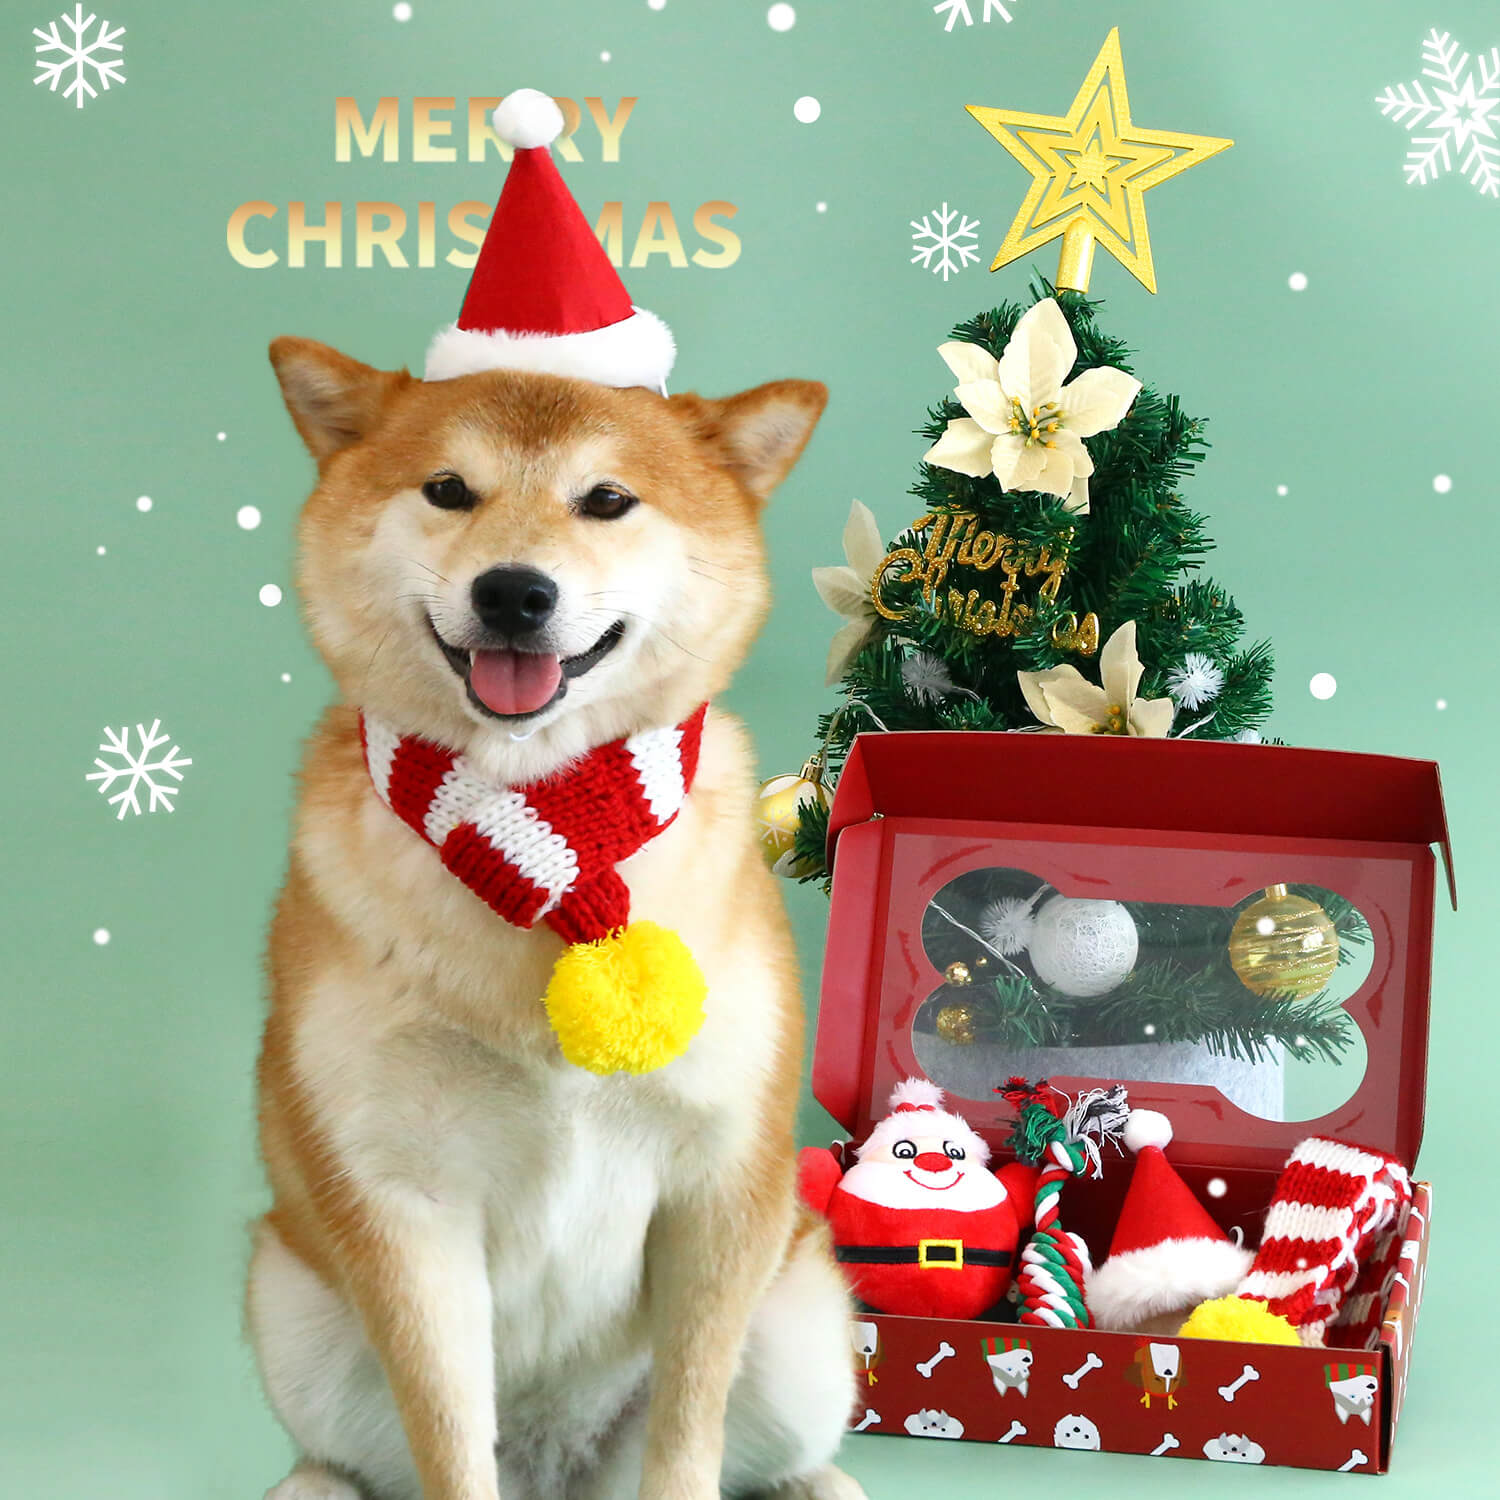 Divertido juego navideño para perros con gorro, bufanda y juguete